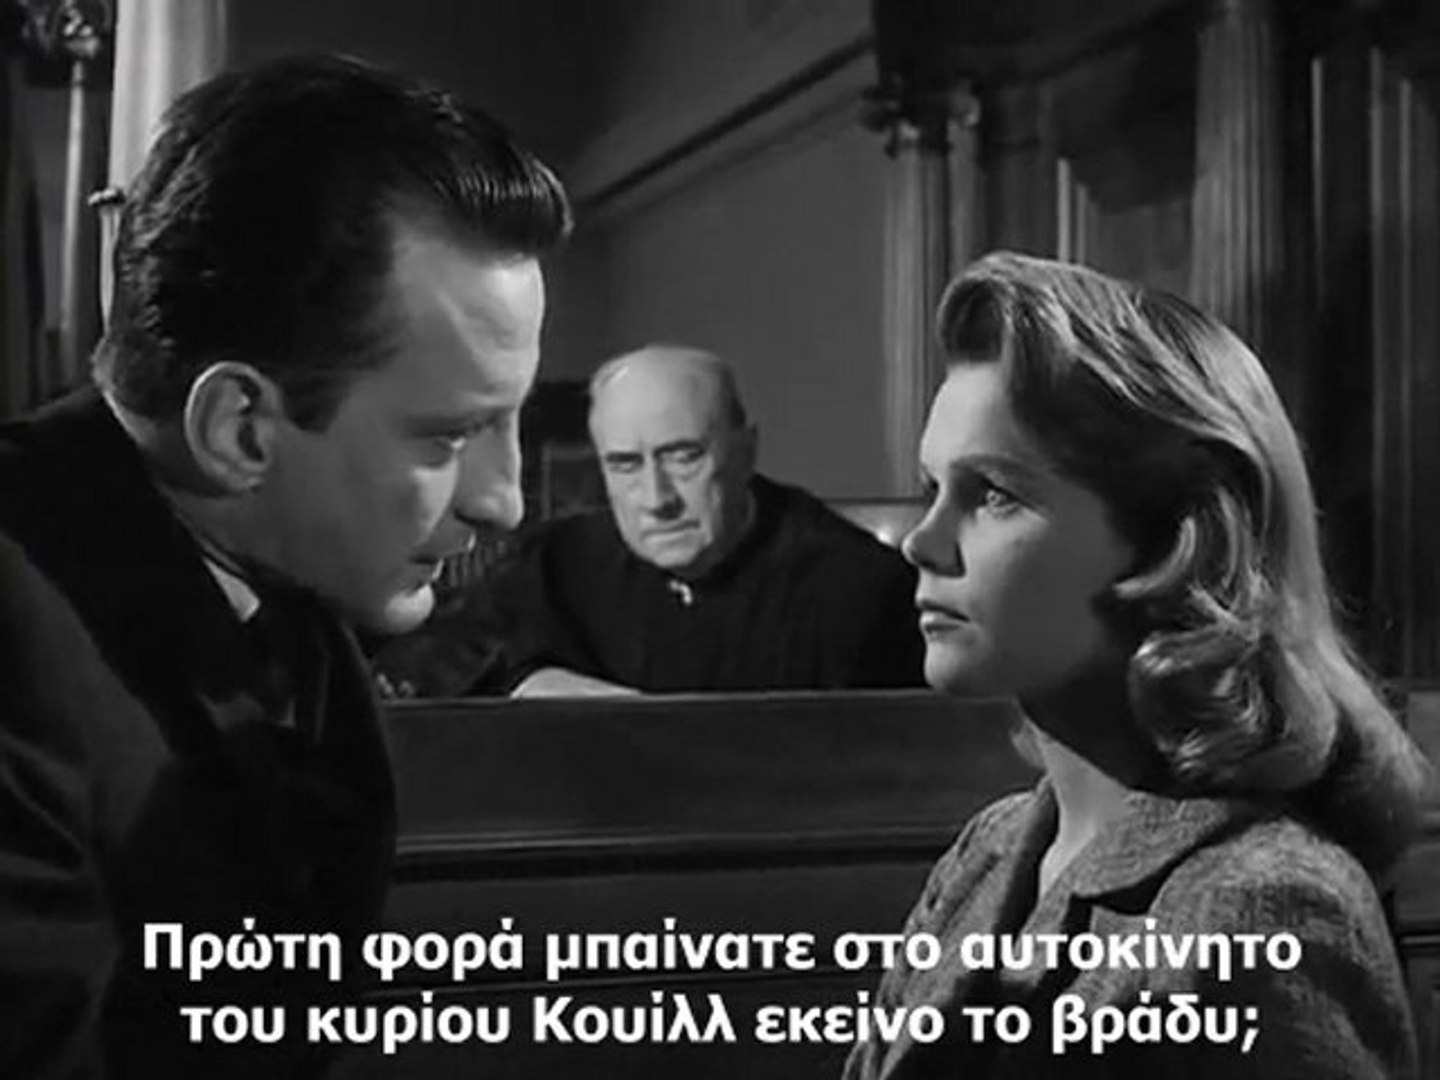 ΑΝΑΤΟΜΙΑ ΕΝΟΣ ΕΓΚΛΗΜΑΤΟΣ (Anatomy of a Murder, 1959) - video Dailymotion